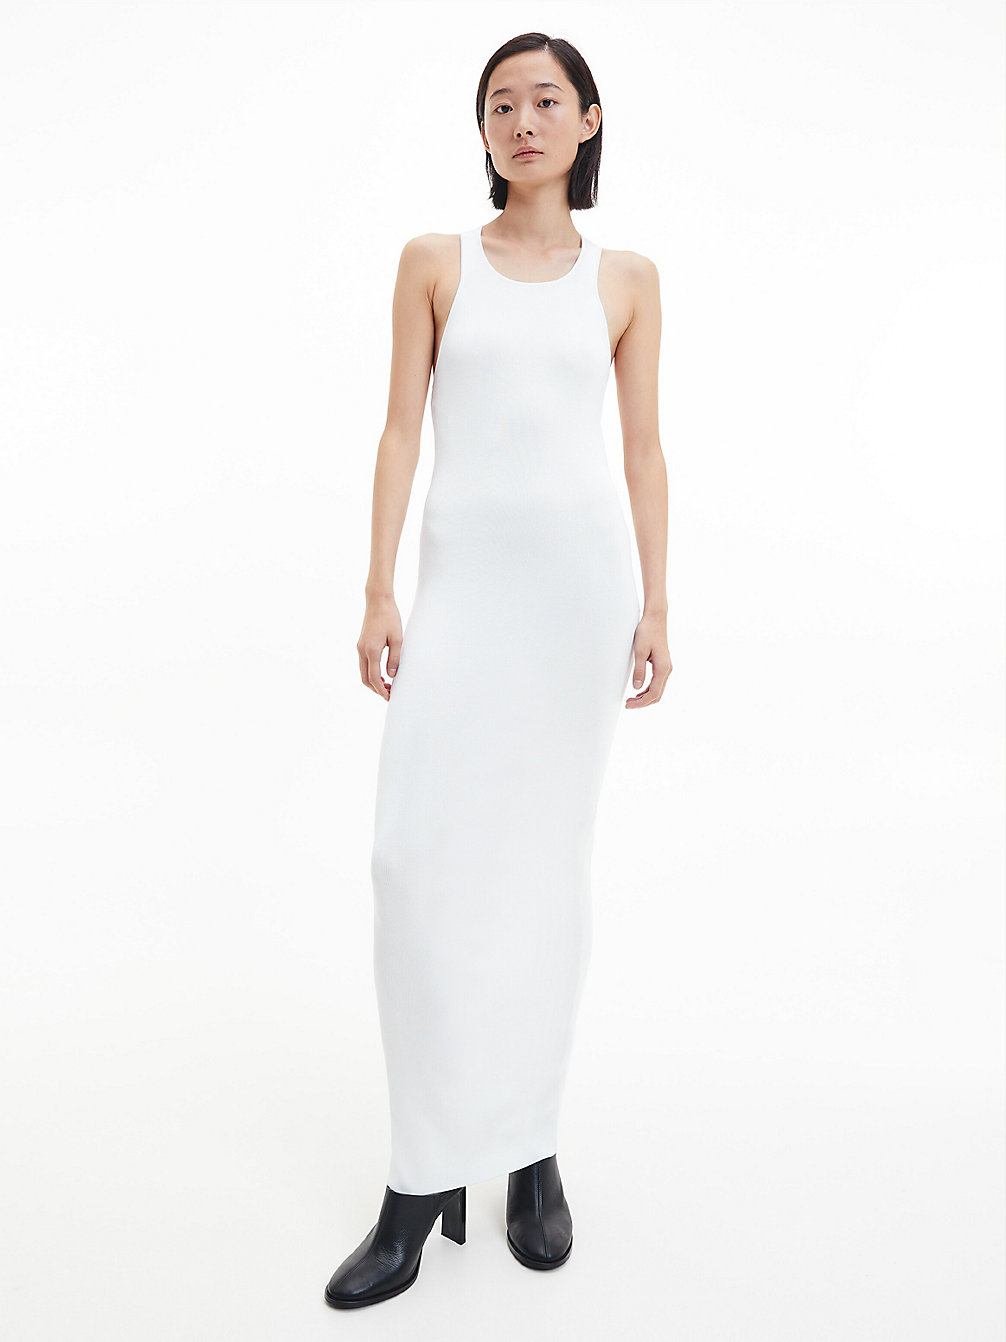 BRIGHT WHITE > Schmales Kleid Mit Plunge-Rücken > undefined Damen - Calvin Klein